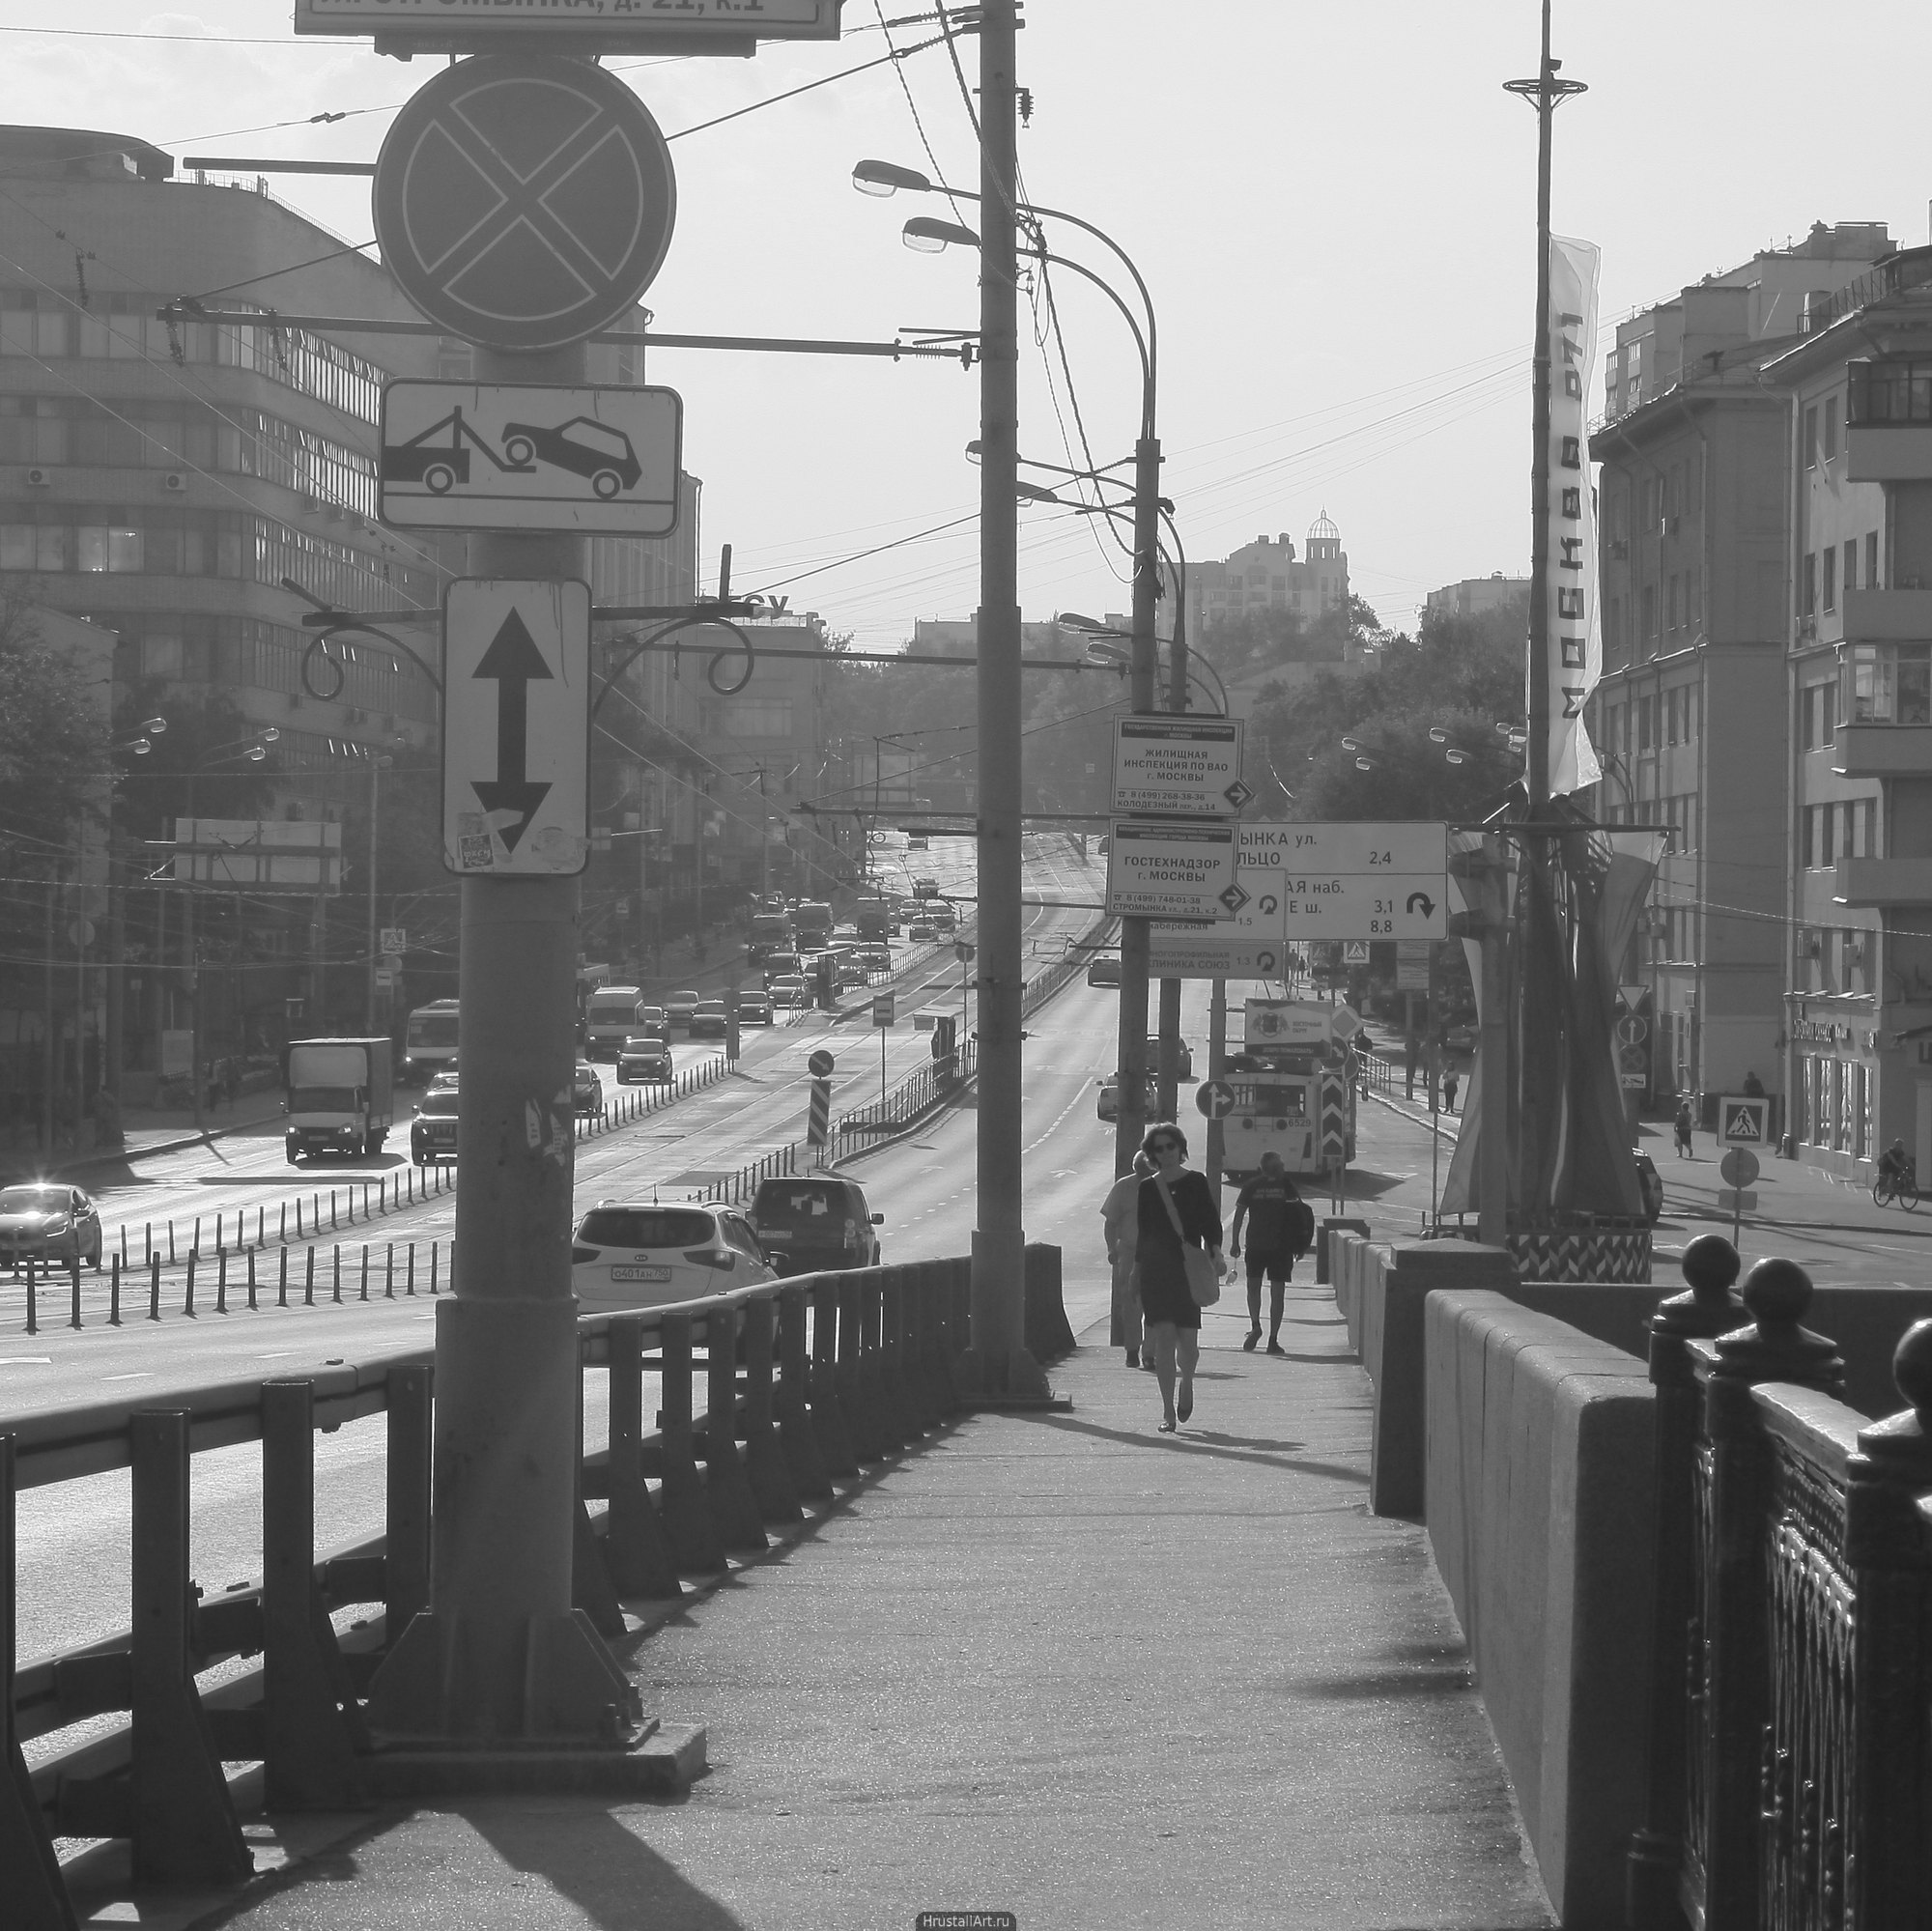 Улица. Мост, прохожие, пыль, серый цвет, городская улица.